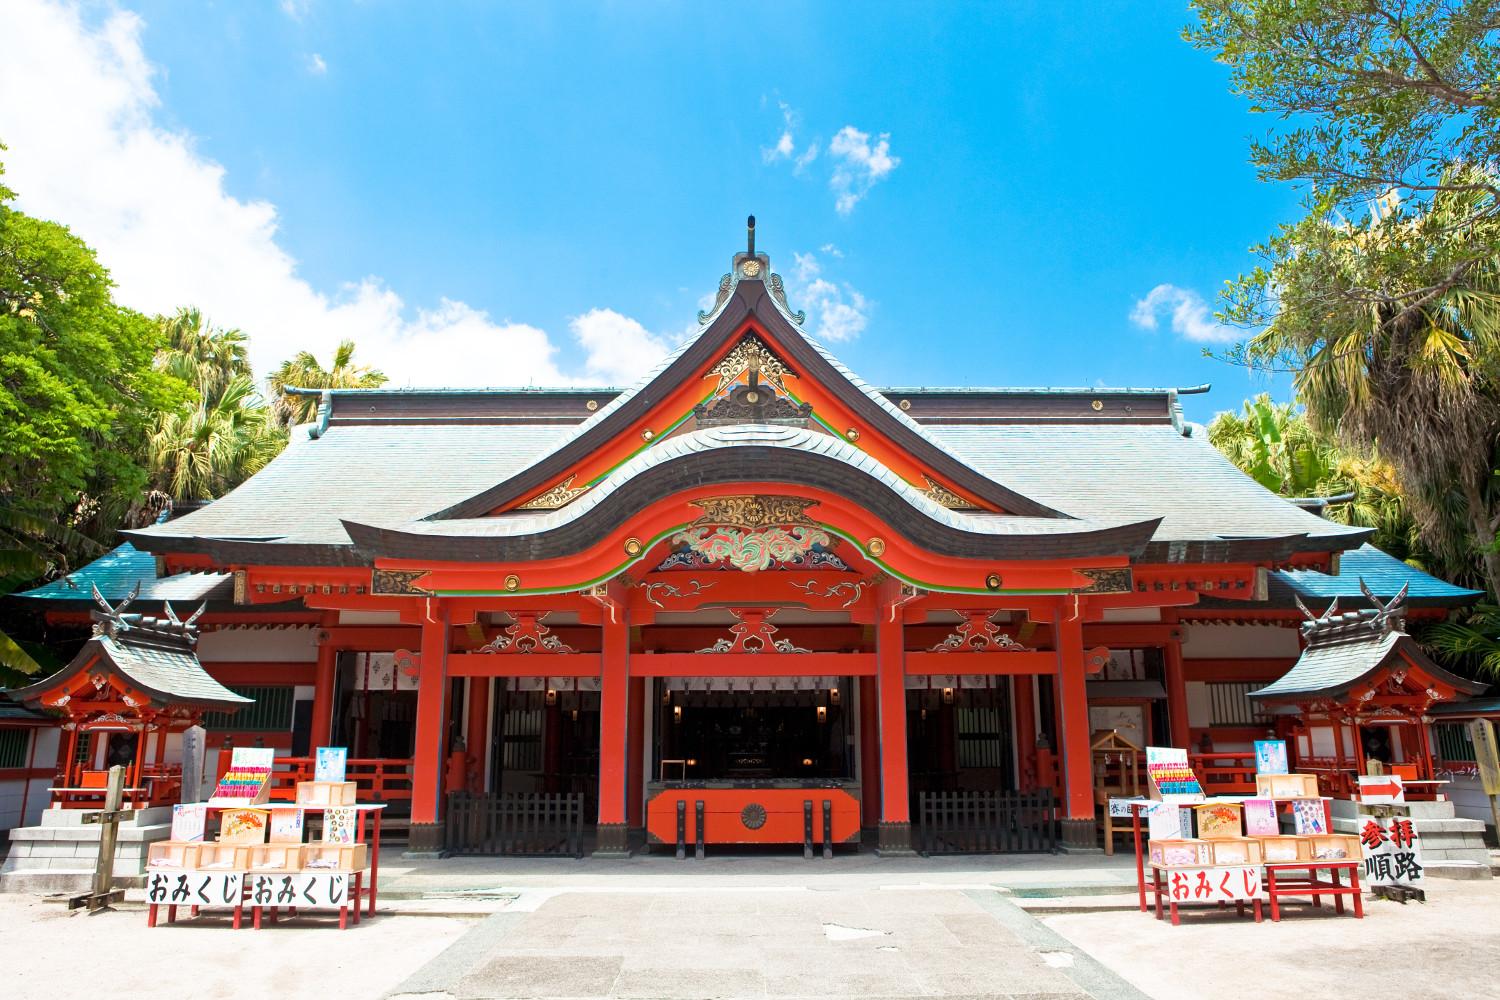  【2日目】青島神社 